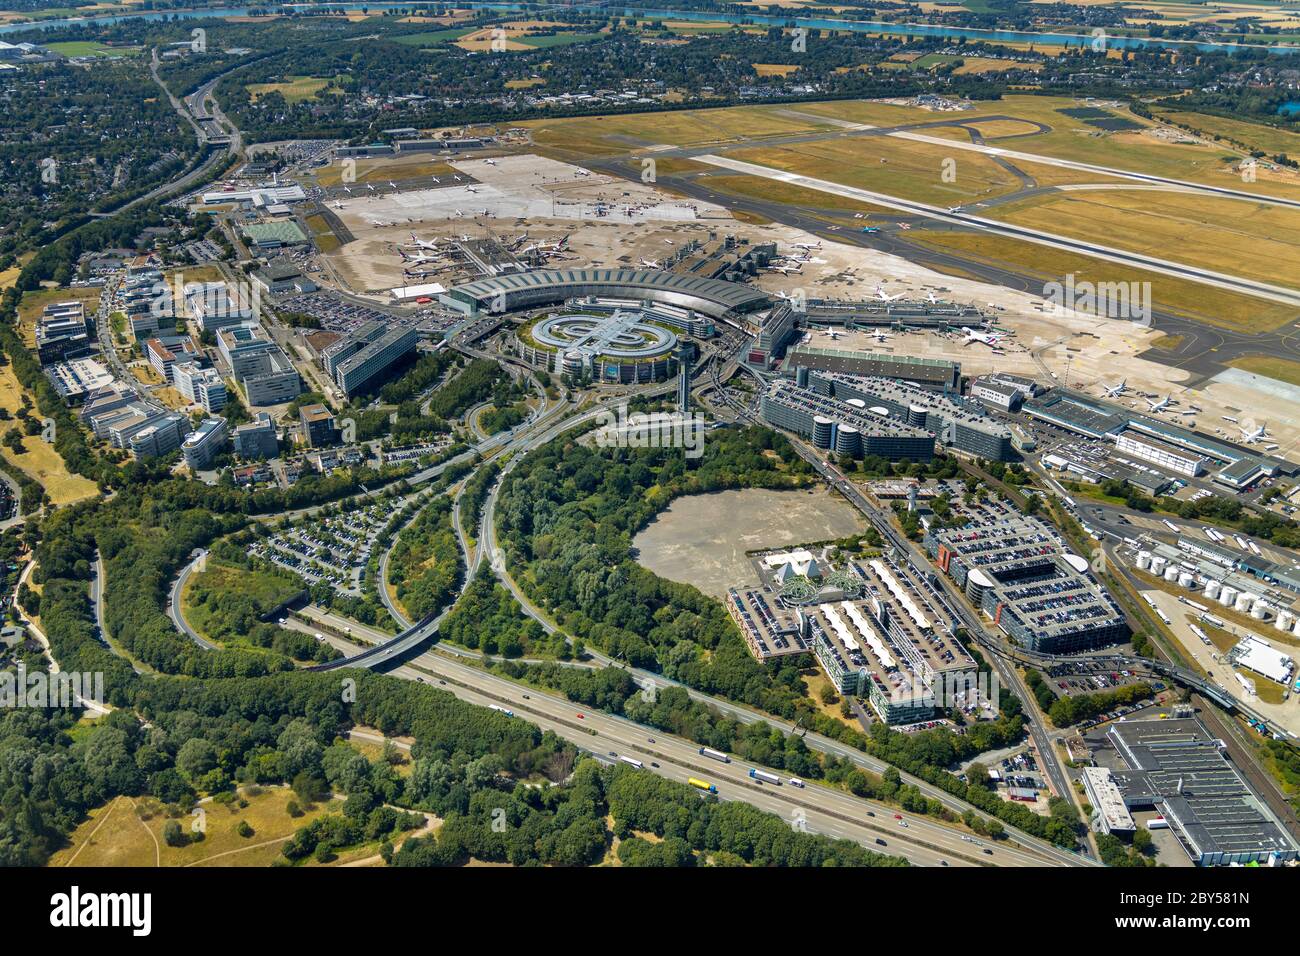 Airport Duesseldorf, 22.07.2019, aerial view, Germany, North Rhine-Westphalia, Lower Rhine, Dusseldorf Stock Photo